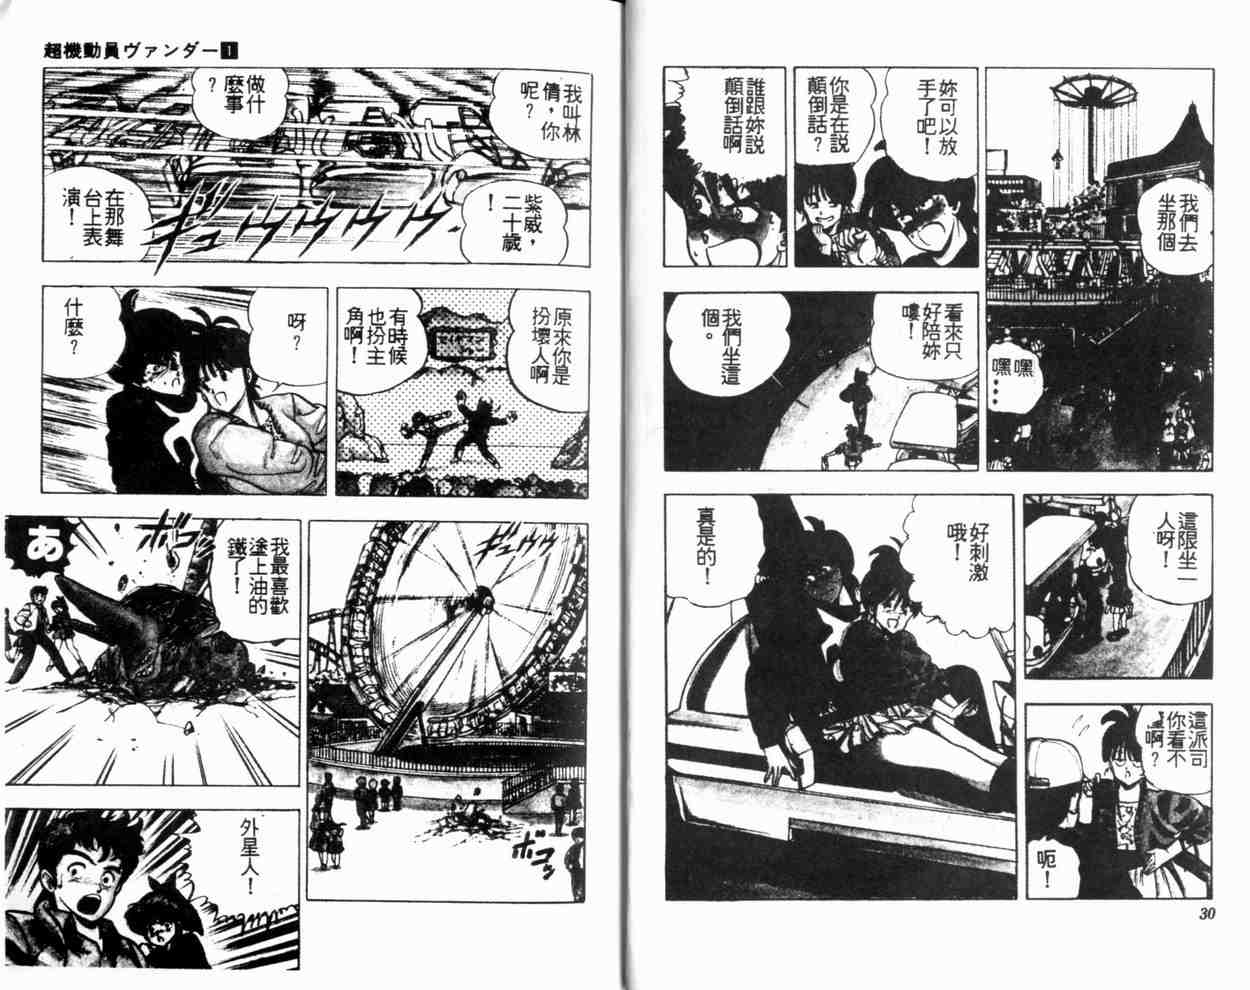 超機動員漫畫01卷 第15頁 超機動員01卷劇情 看漫畫